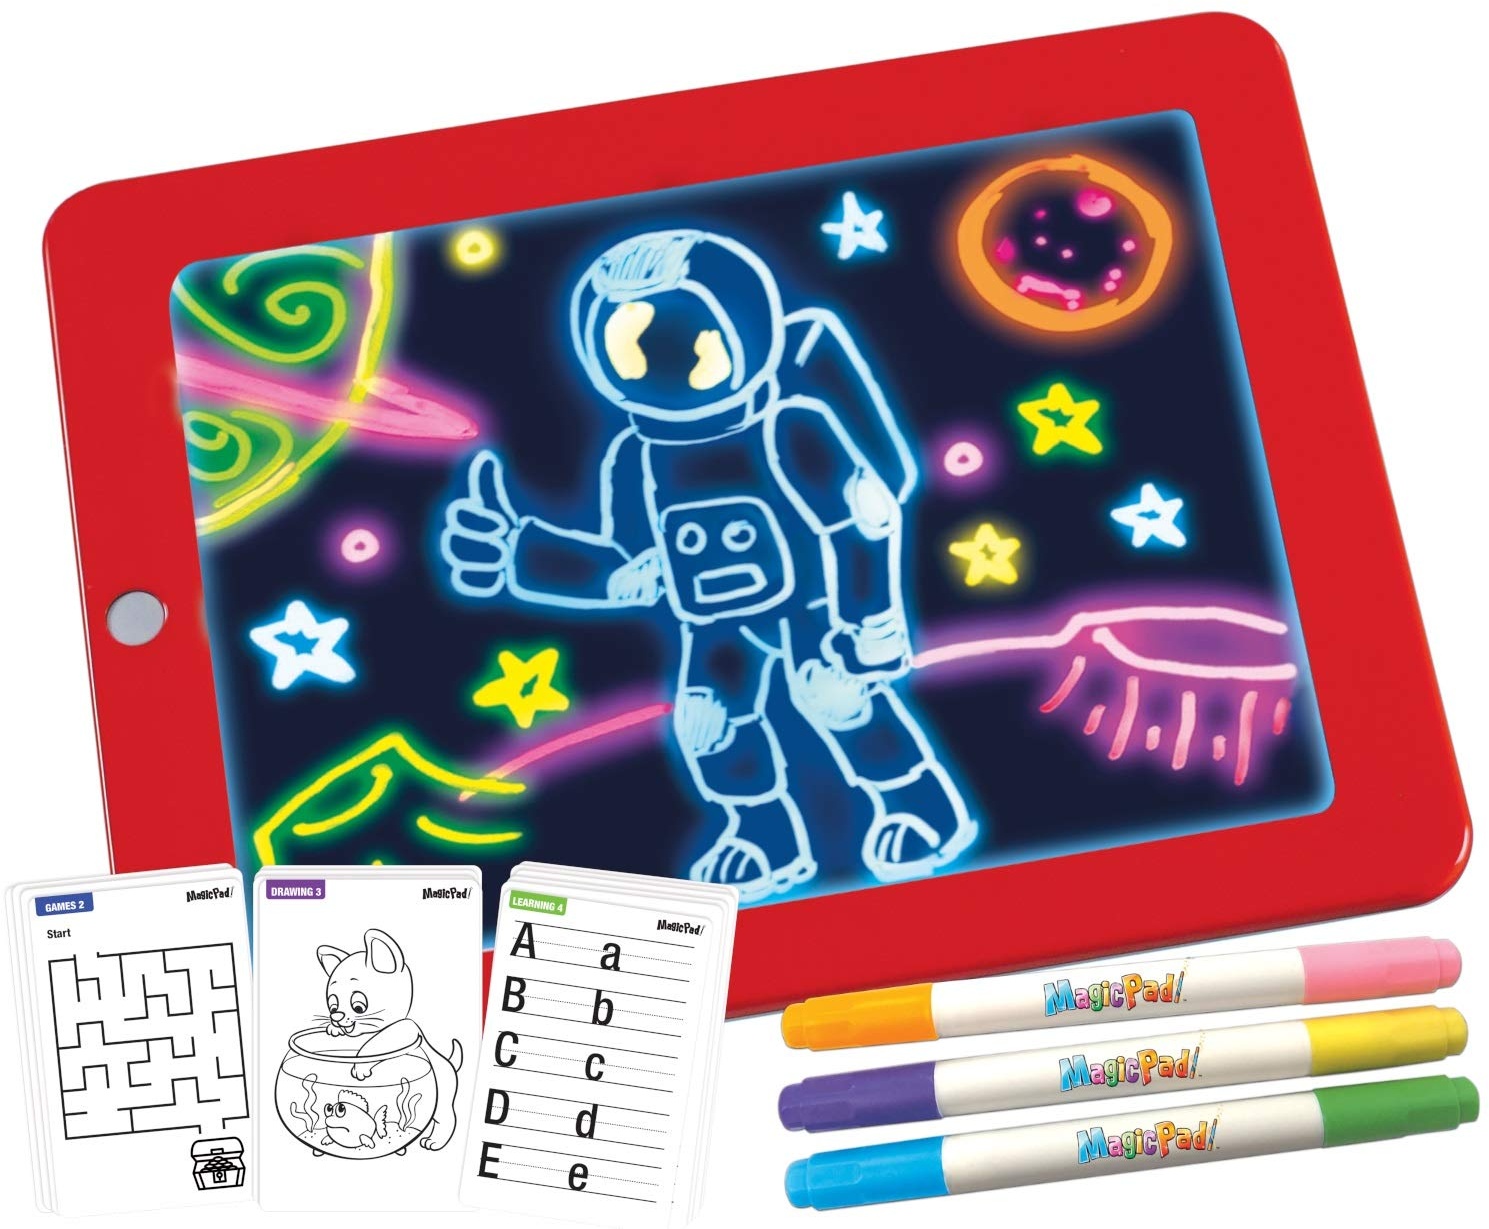 Mediashop Magic Pad – Zaubertafel mit 6 Neonfarben und 8 Leuchteffekten – Kreative Beschäftigung für Kinder, auch unterwegs – Maltafel mit 30 Schablonen, abwischbar